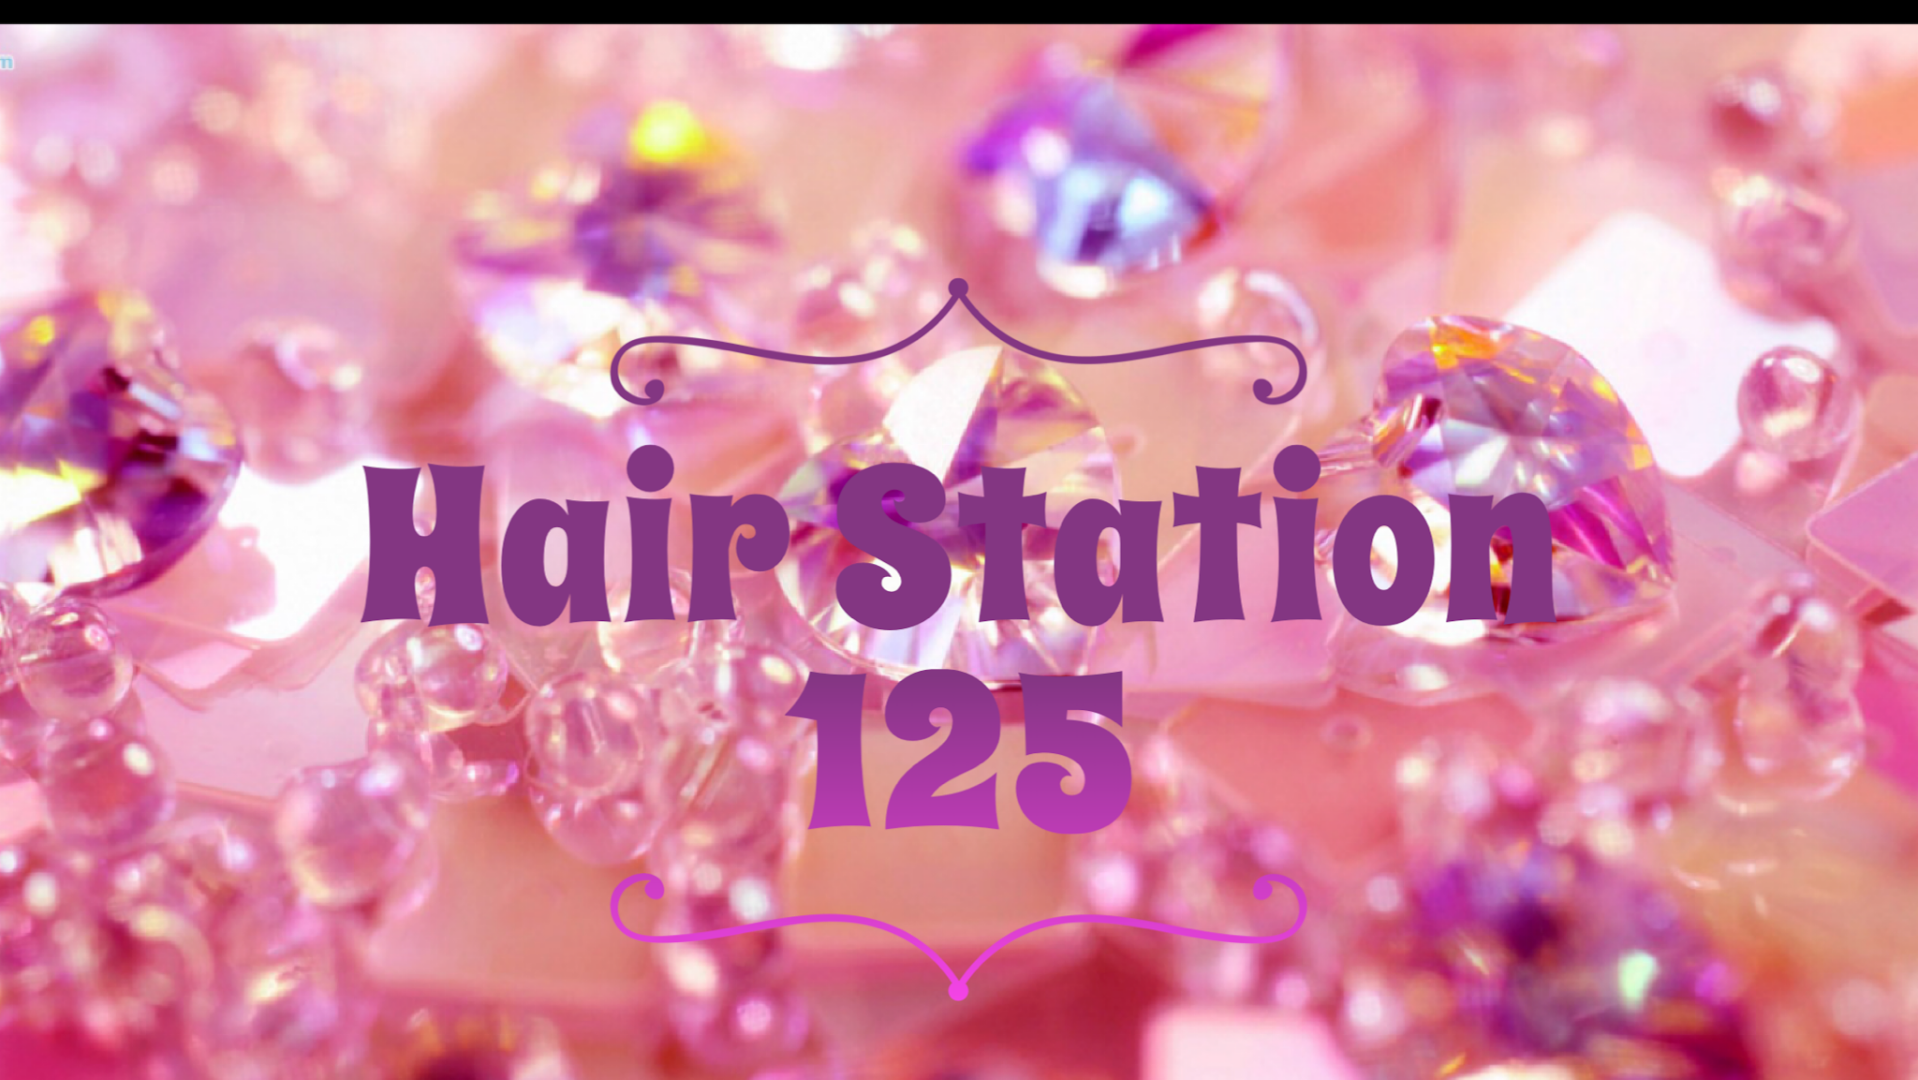 Hair Station 125